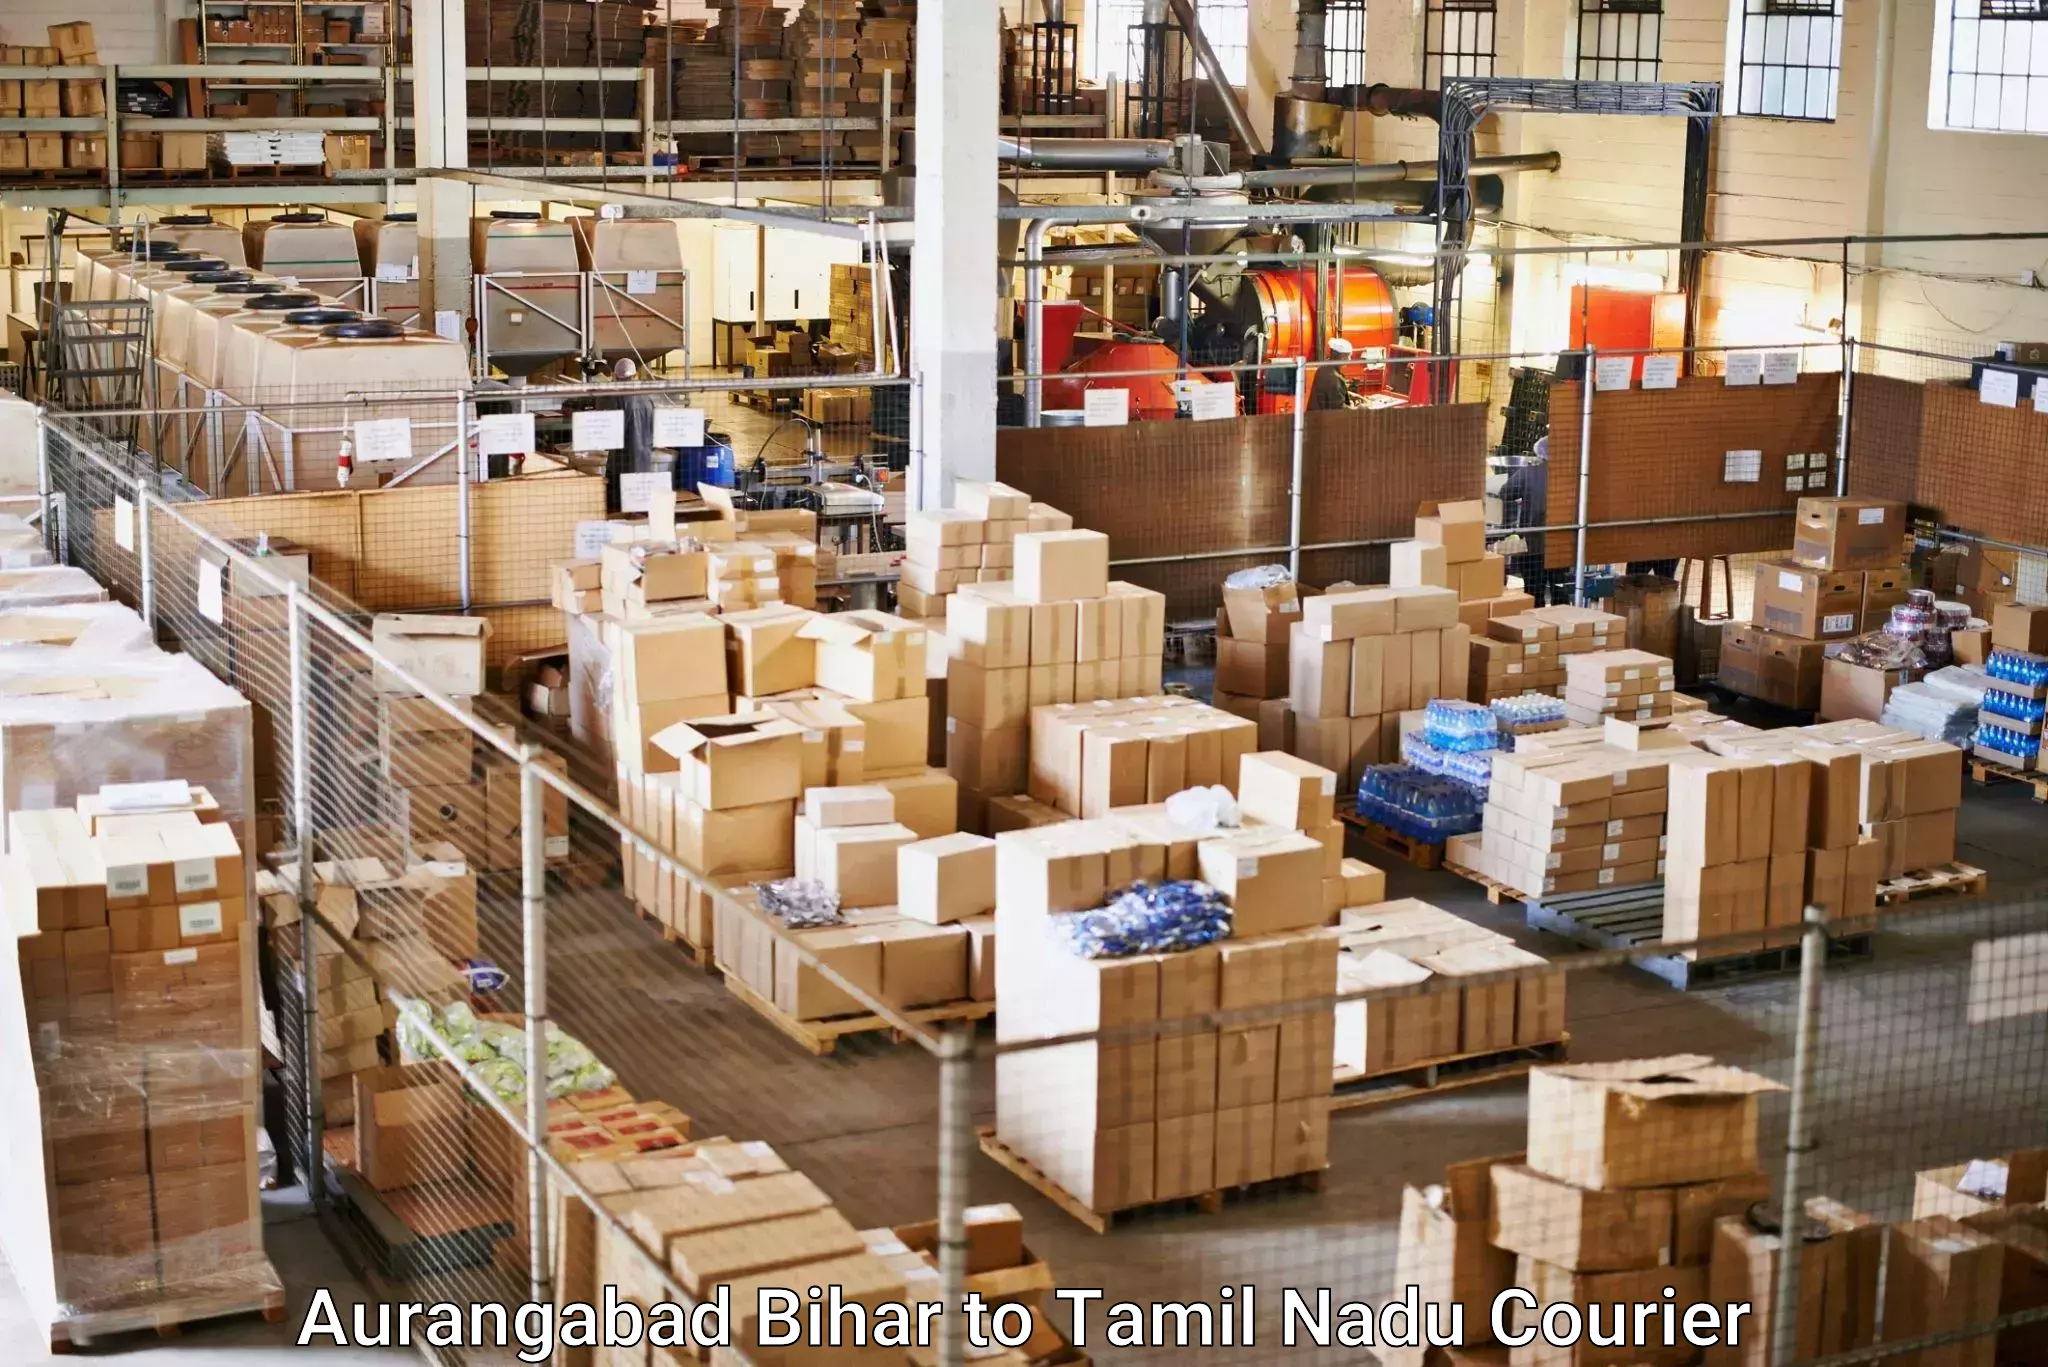 Bulk shipment in Aurangabad Bihar to Amrita Vishwa Vidyapeetham Coimbatore